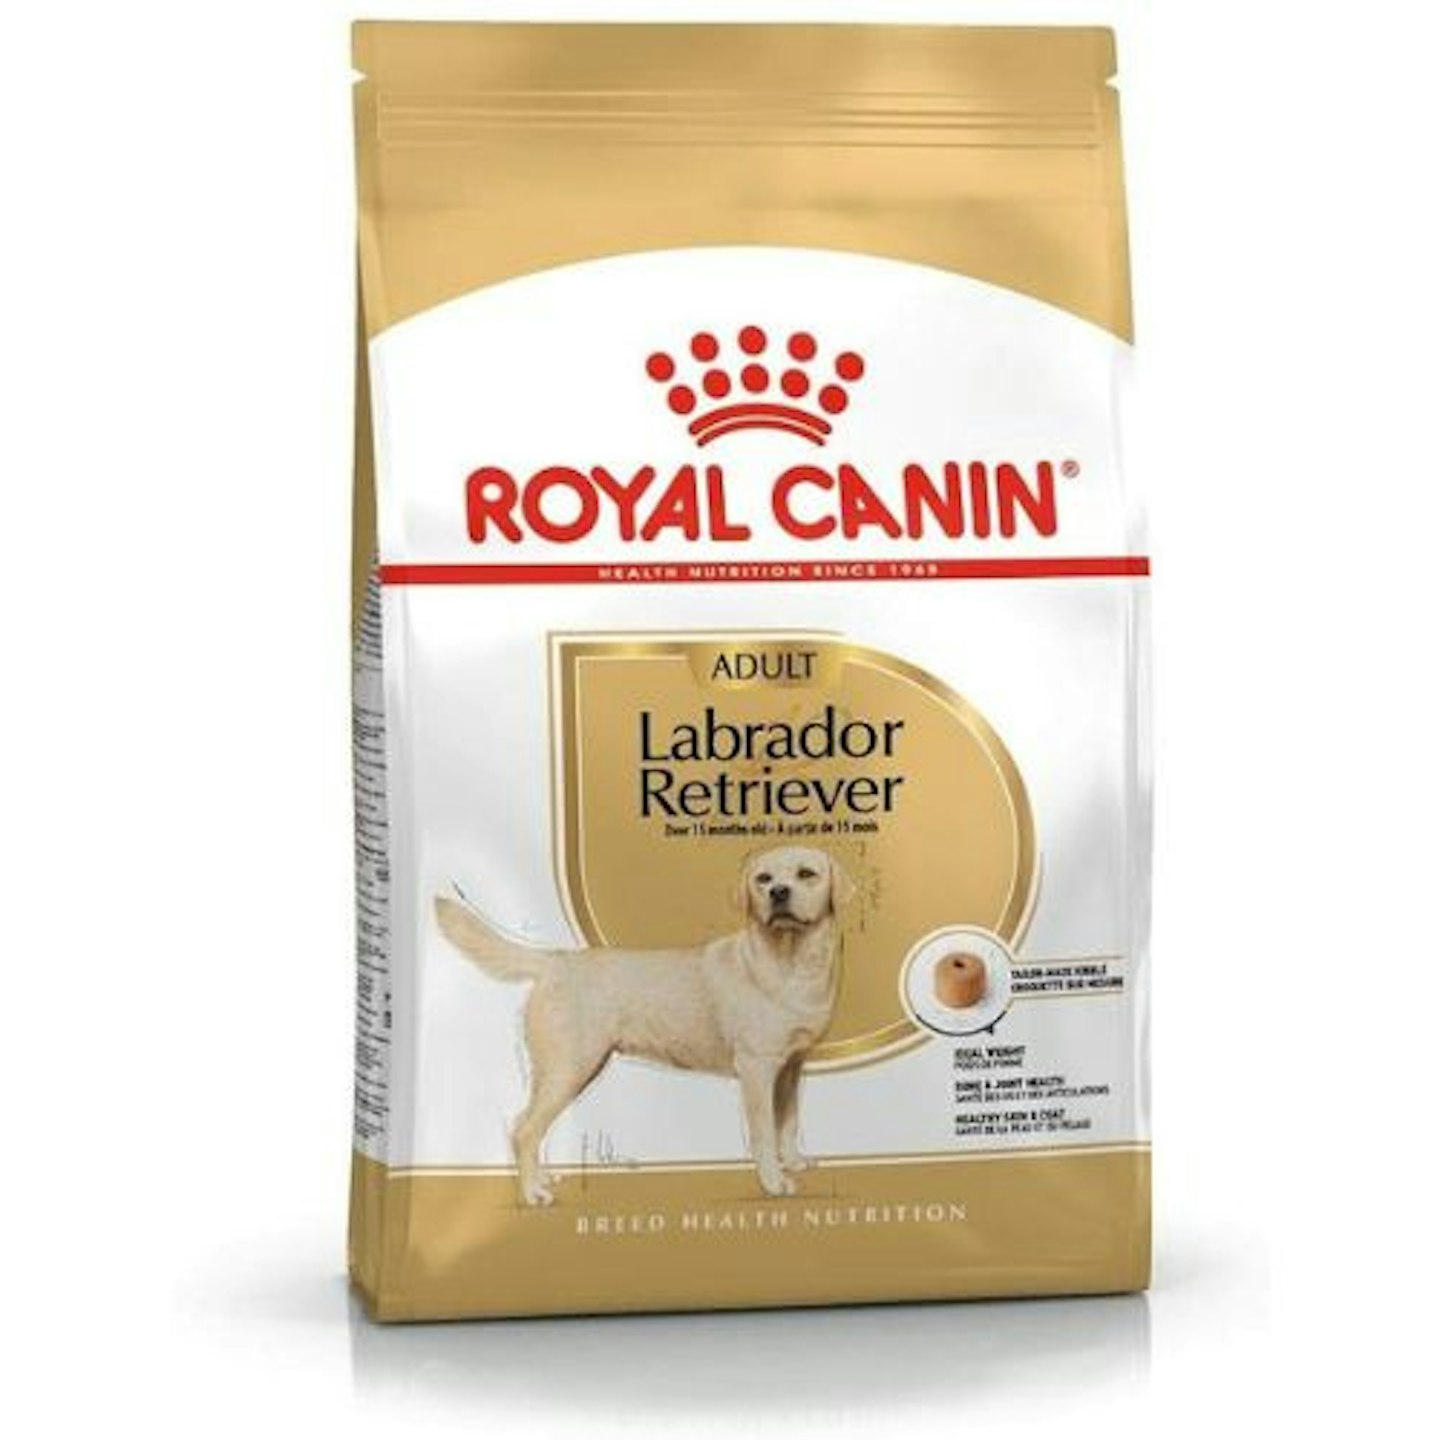 Royal Canin Dog Food Labrador Retriever Dry Mix